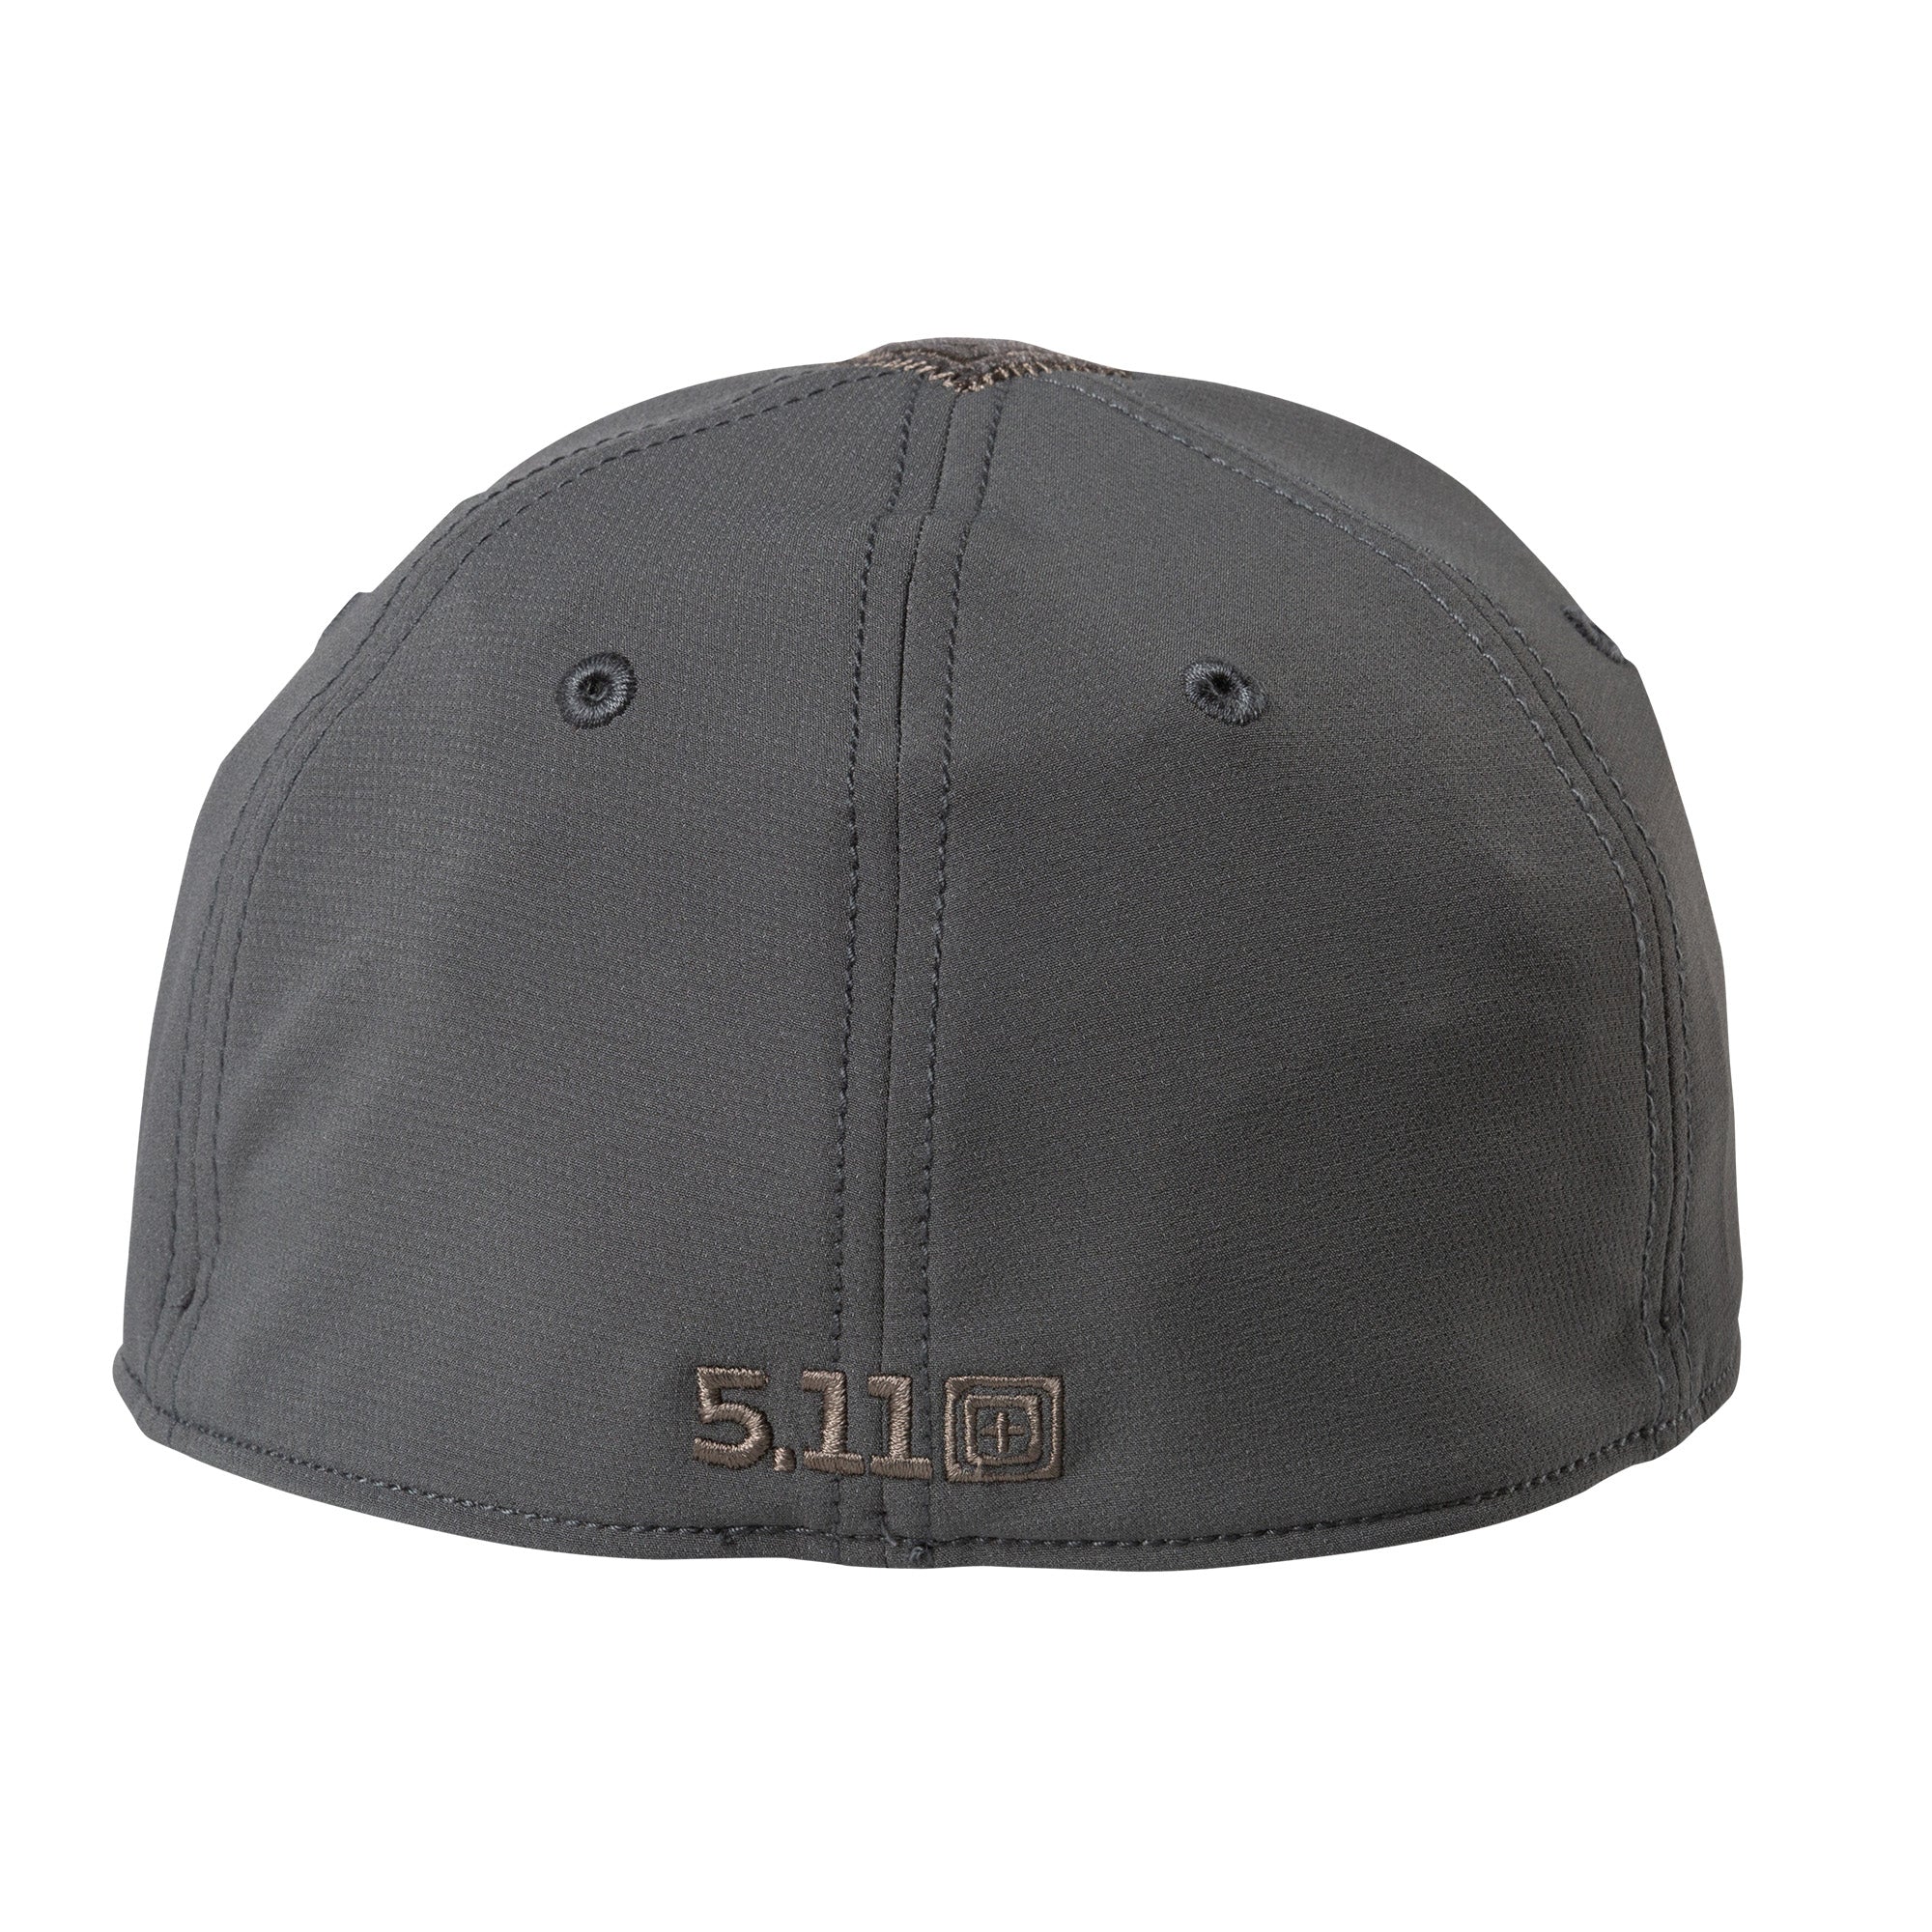 5.11 Tactical Caliber Reticle Hat Headwear 5.11 Tactical Storm Medium / Large Tactical Gear Supplier Tactical Distributors Australia